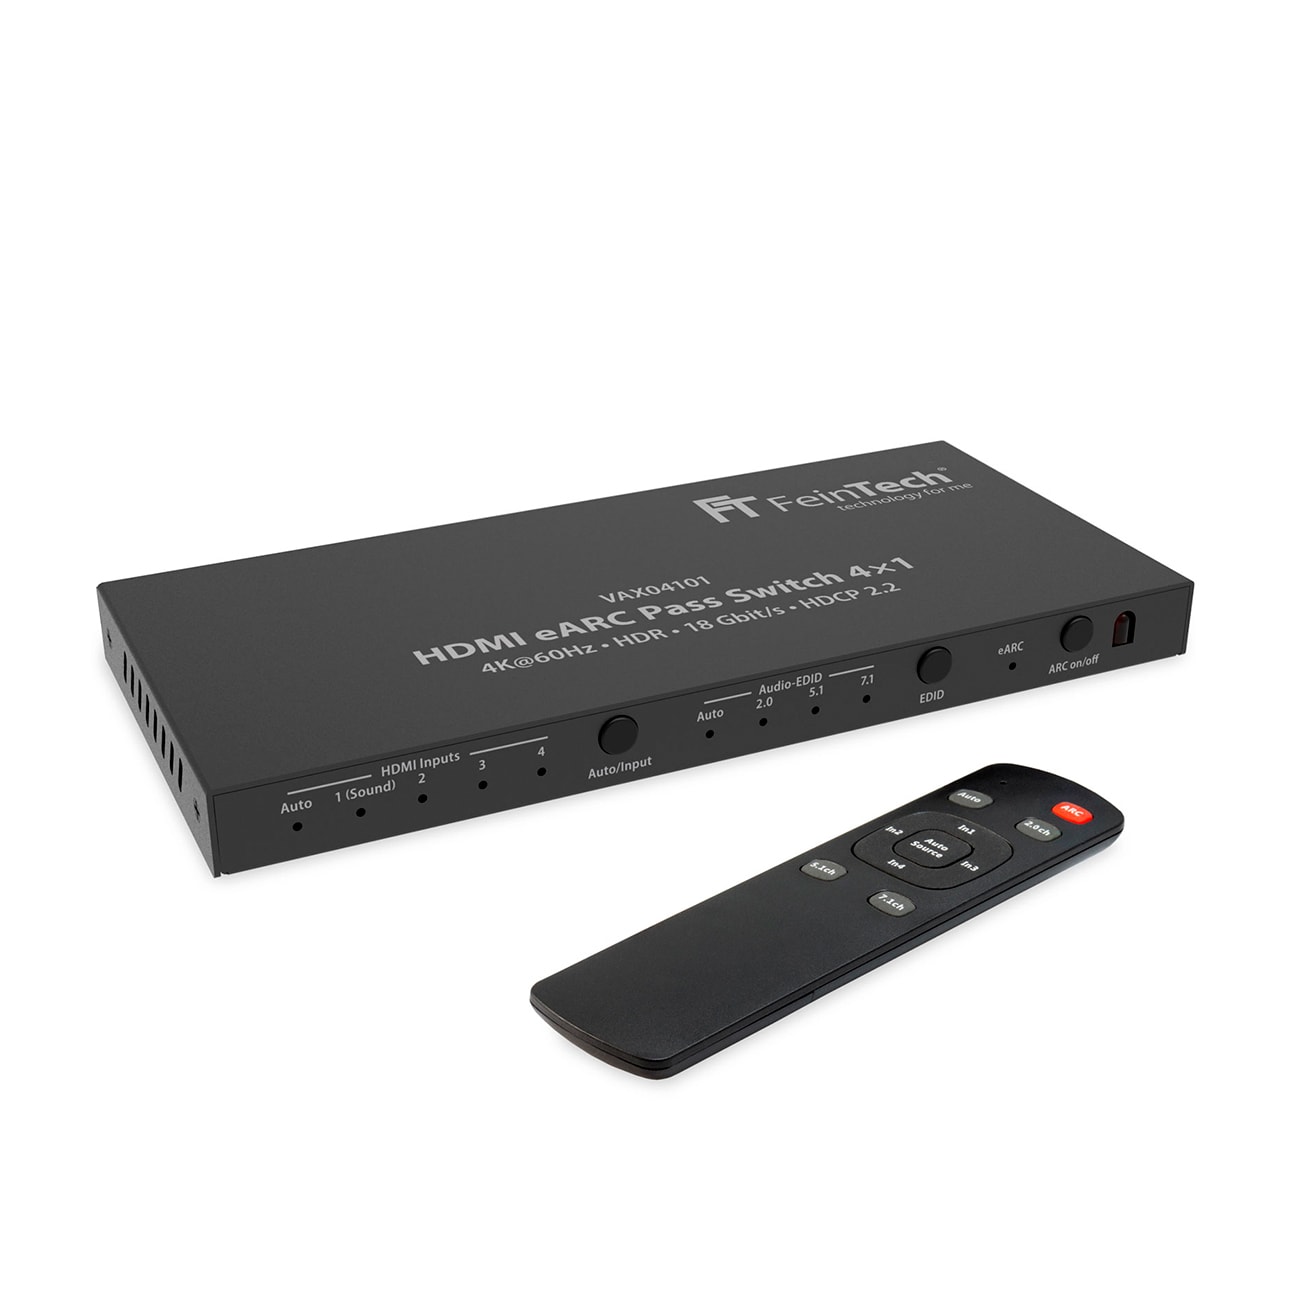 celexon Kit HDMI sans fil